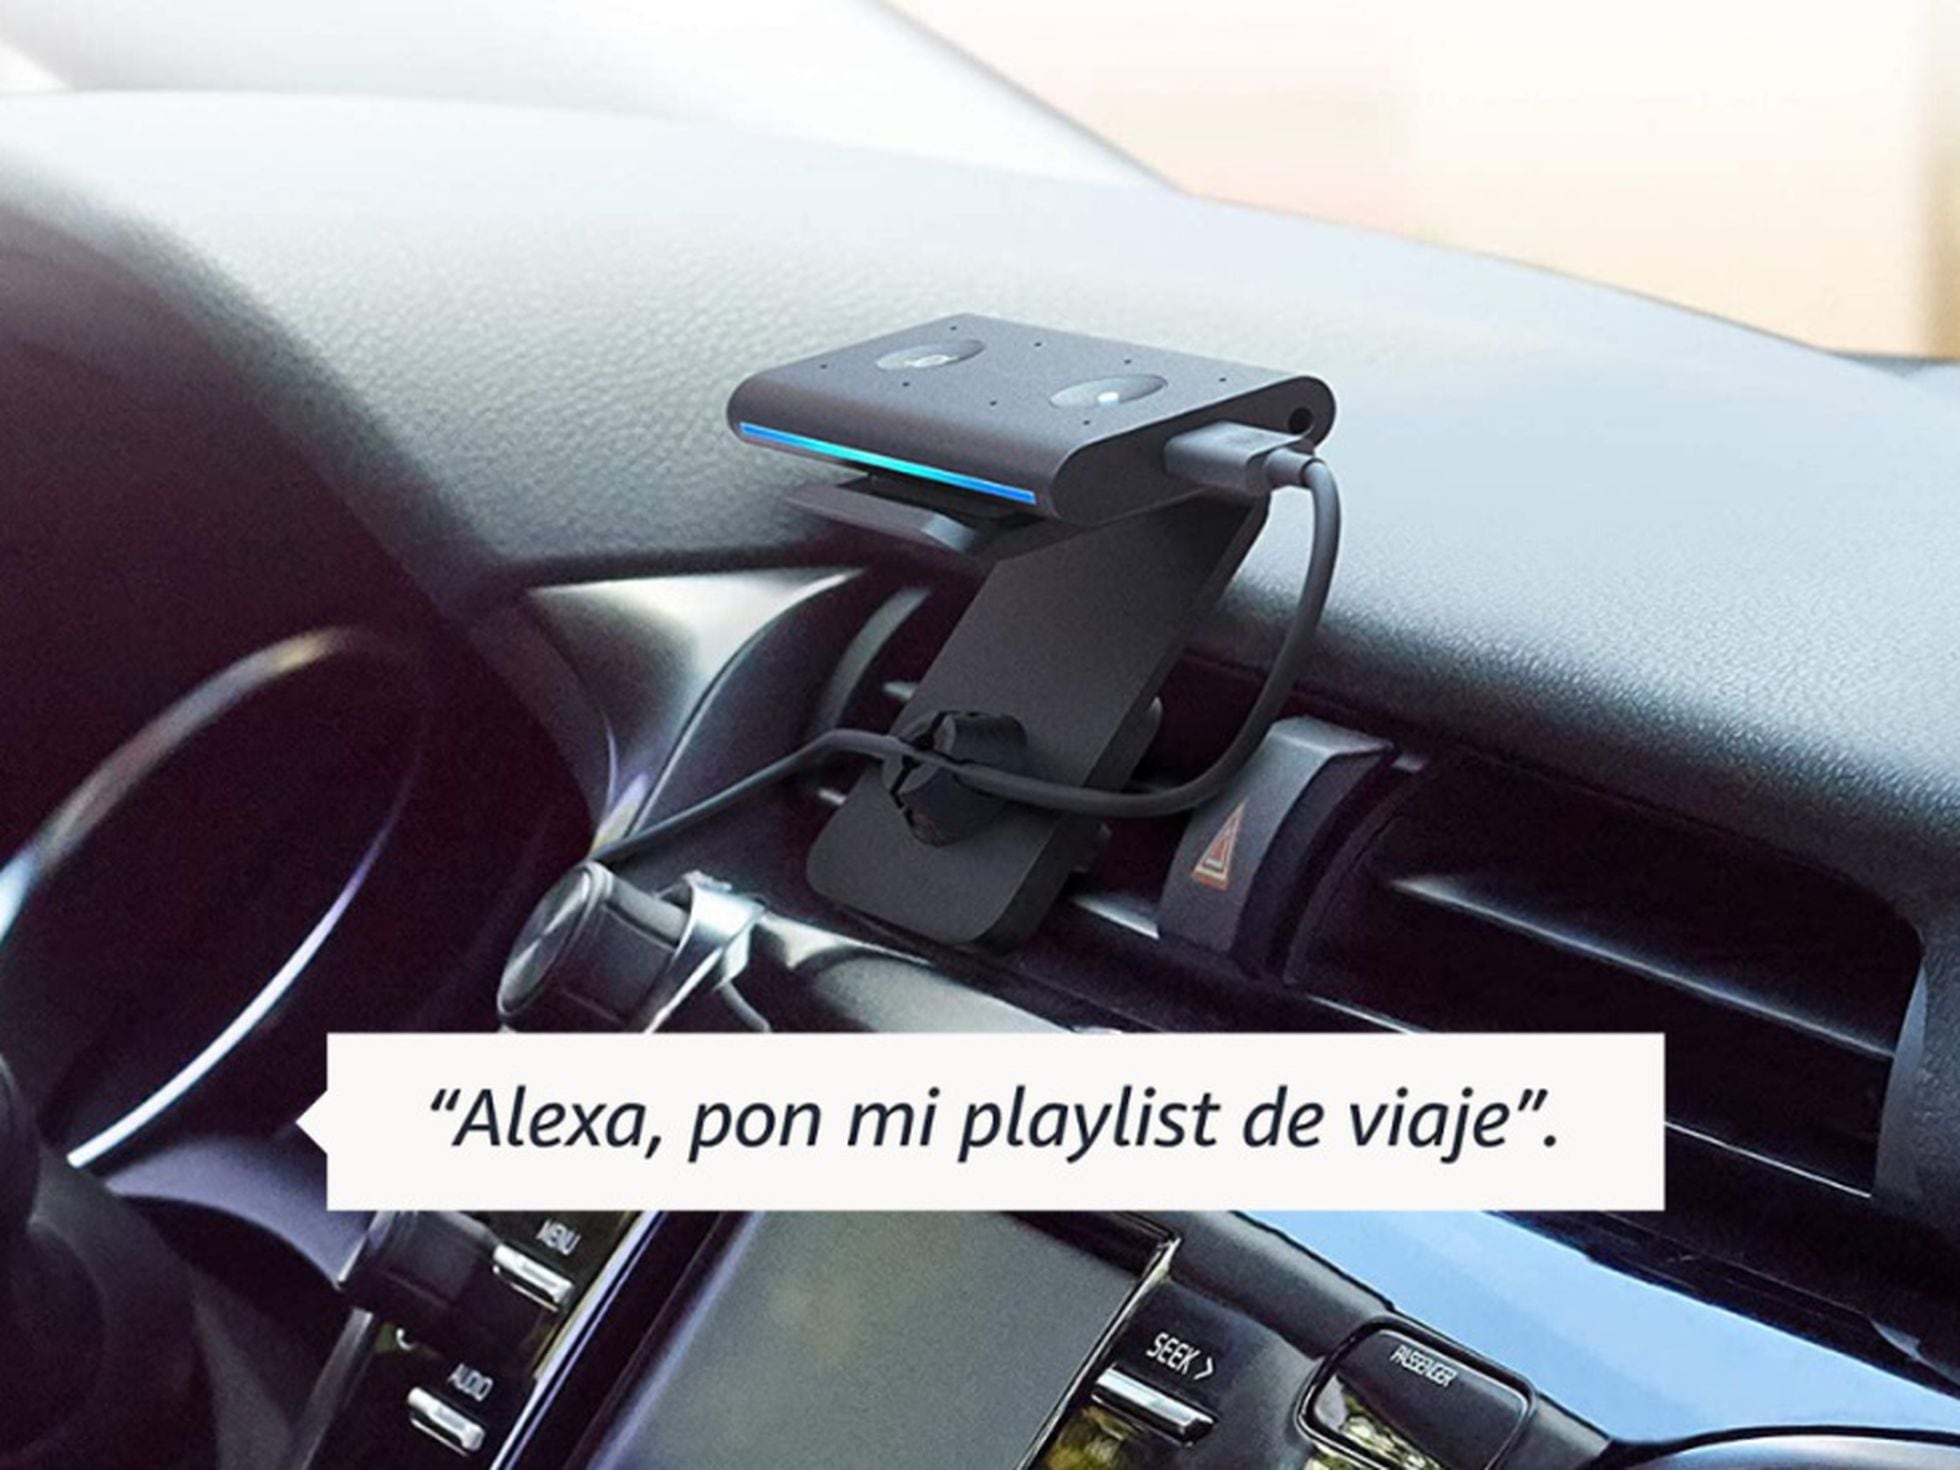 Echo Auto te permitirá tener Alexa en cualquier auto